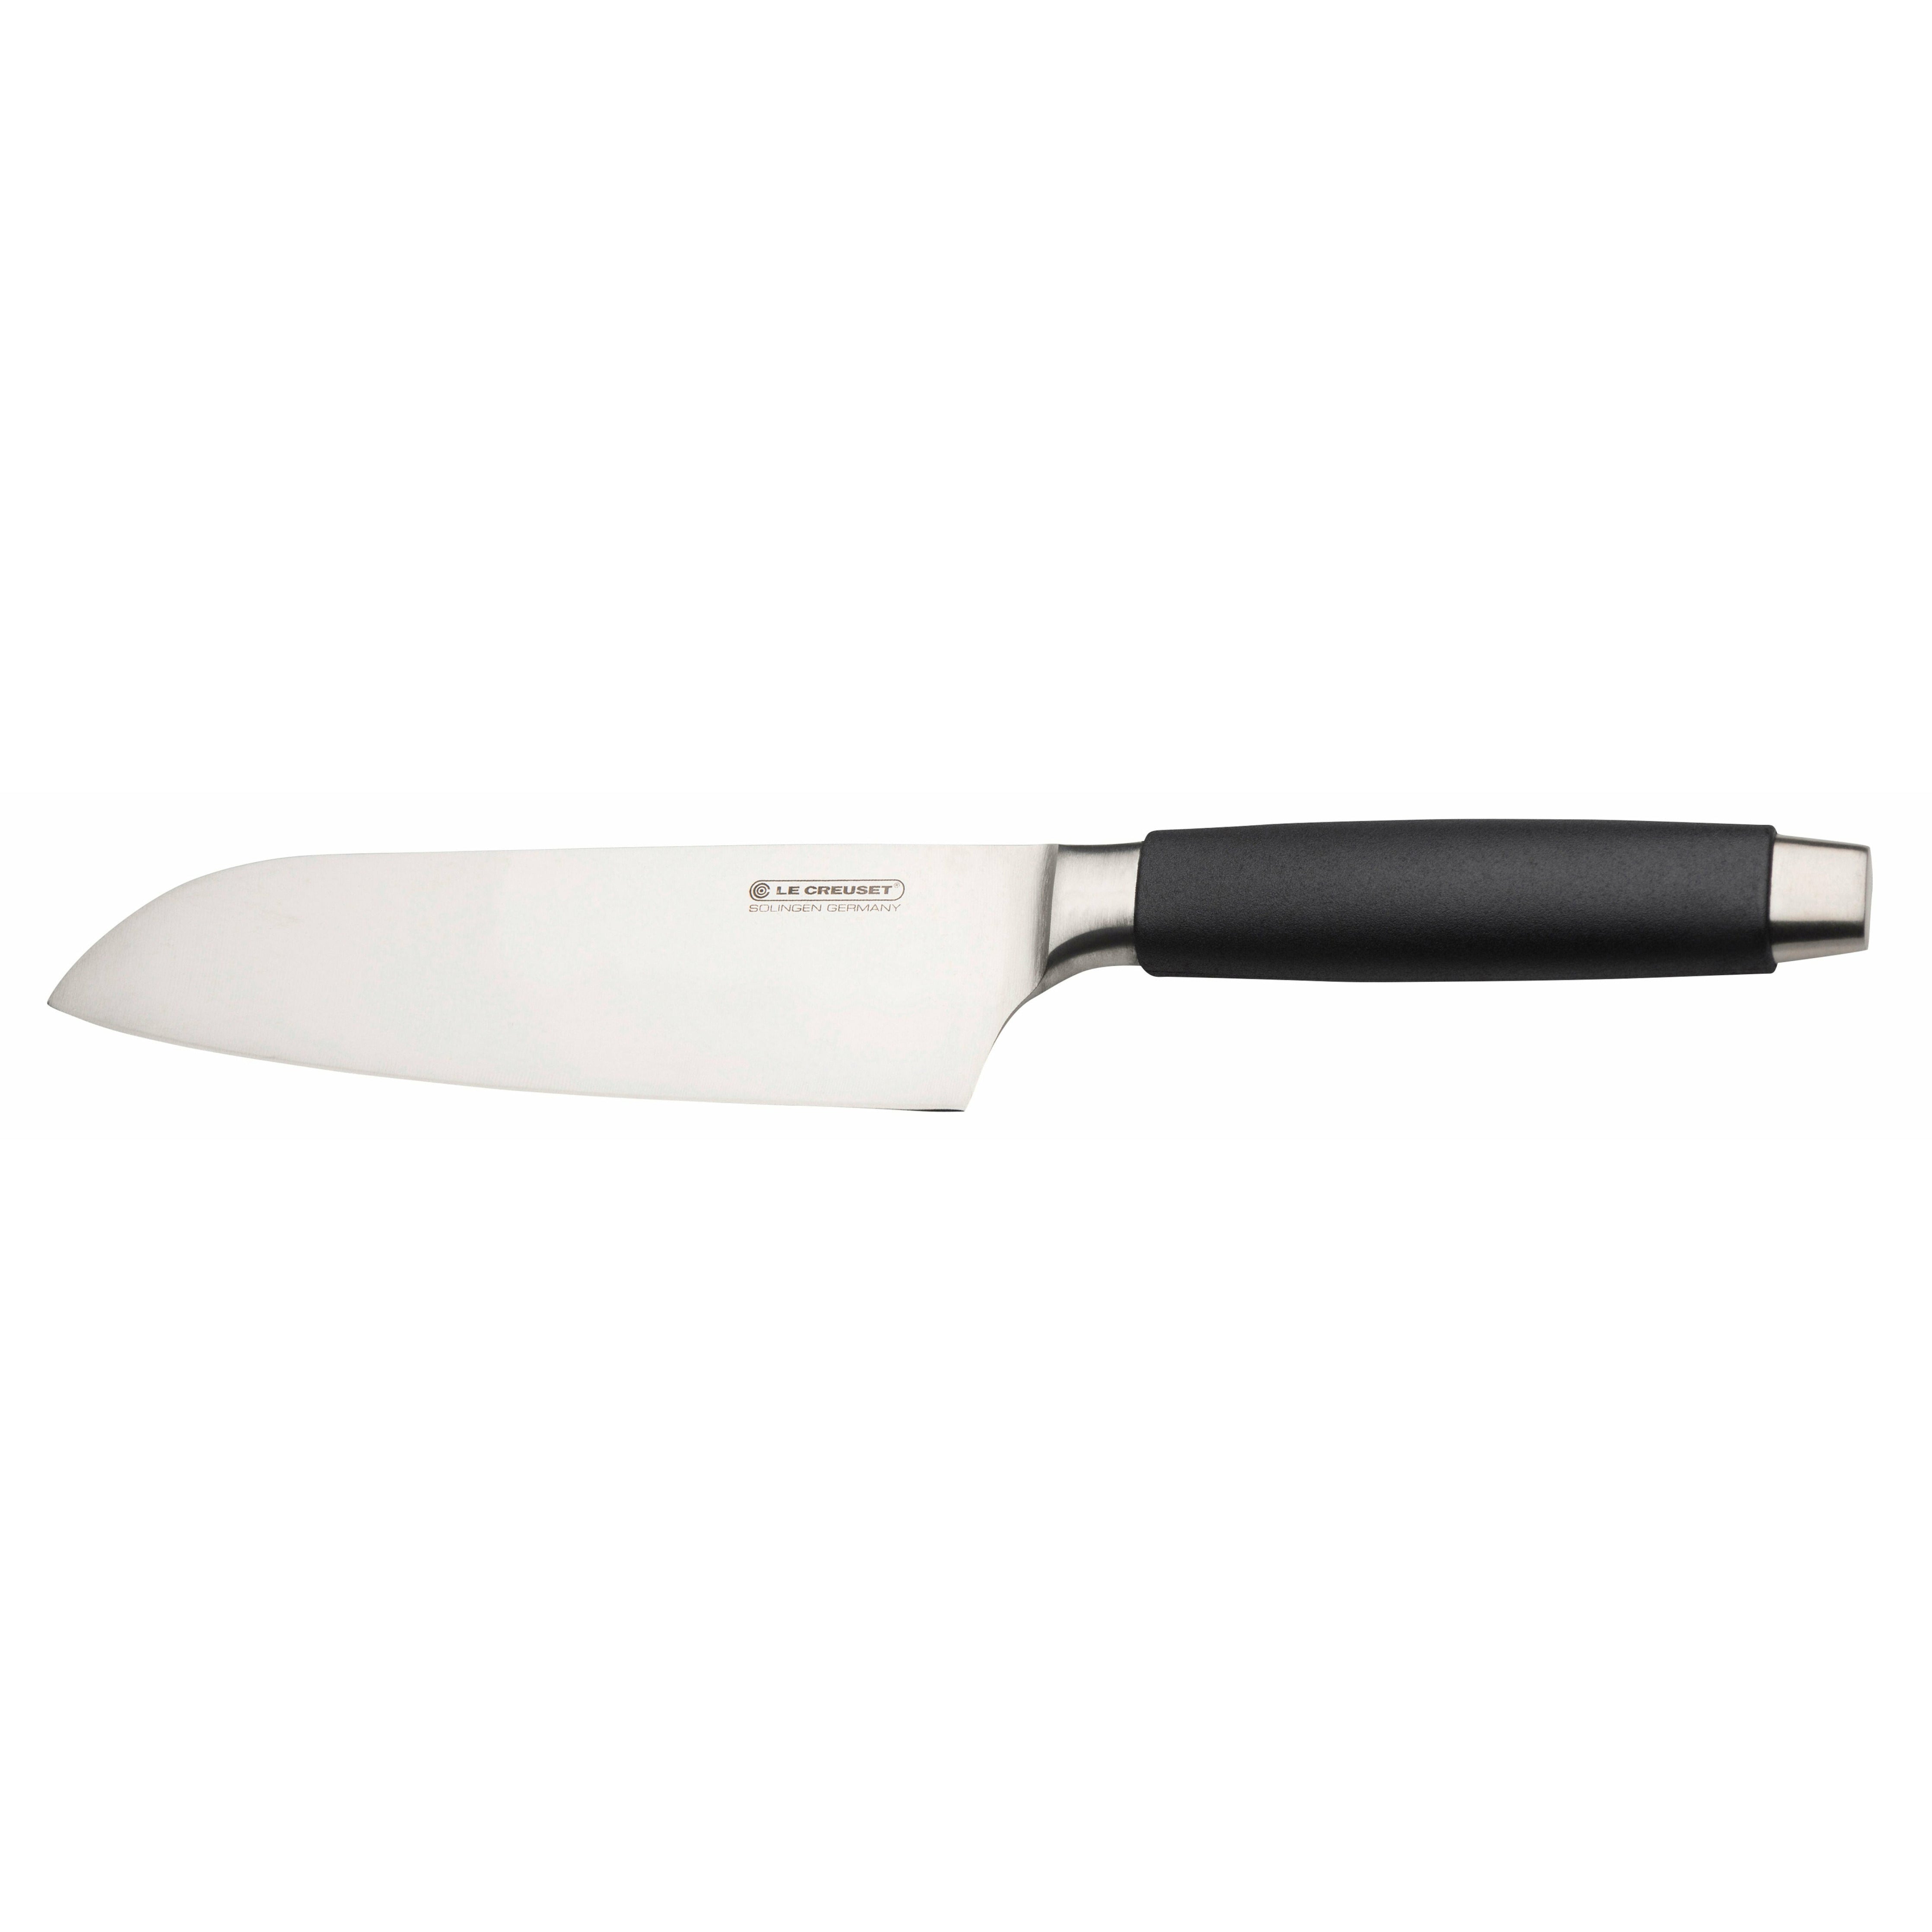 Le Creuset Standard du couteau Santoku avec poignée noire, 18 cm